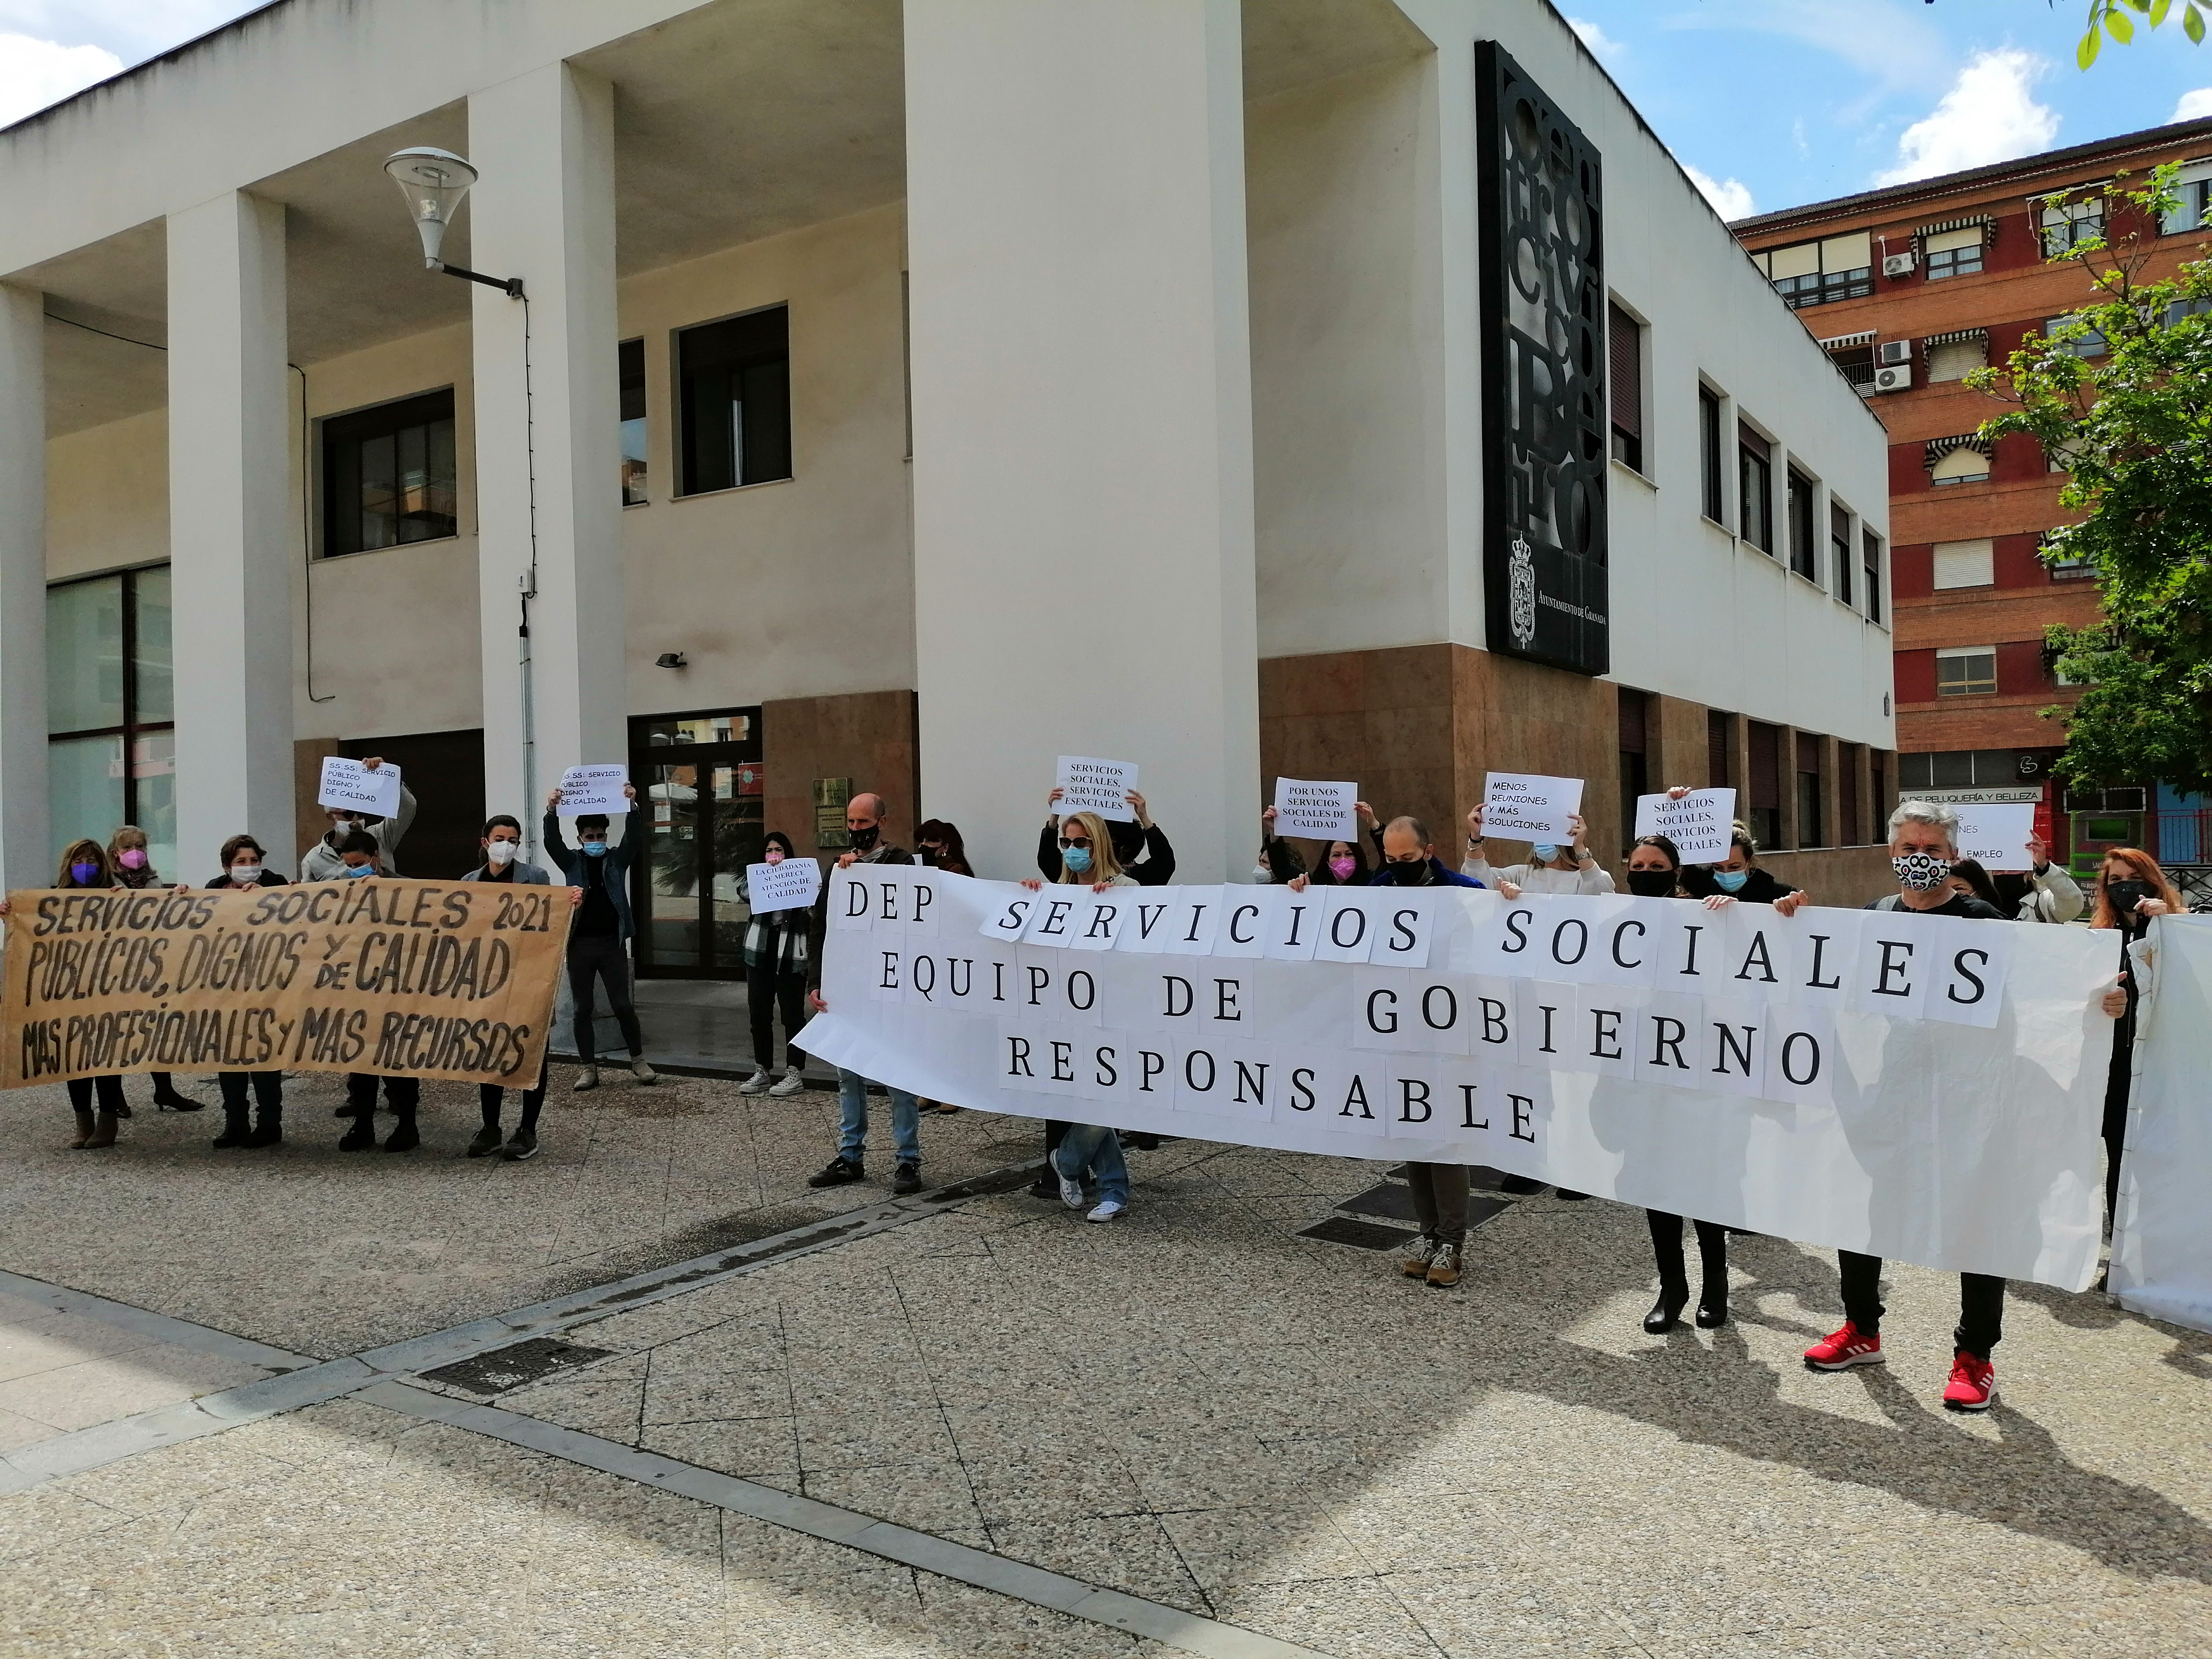 Continúan las protestas de Servicios Sociales del Ayuntamiento de Granada